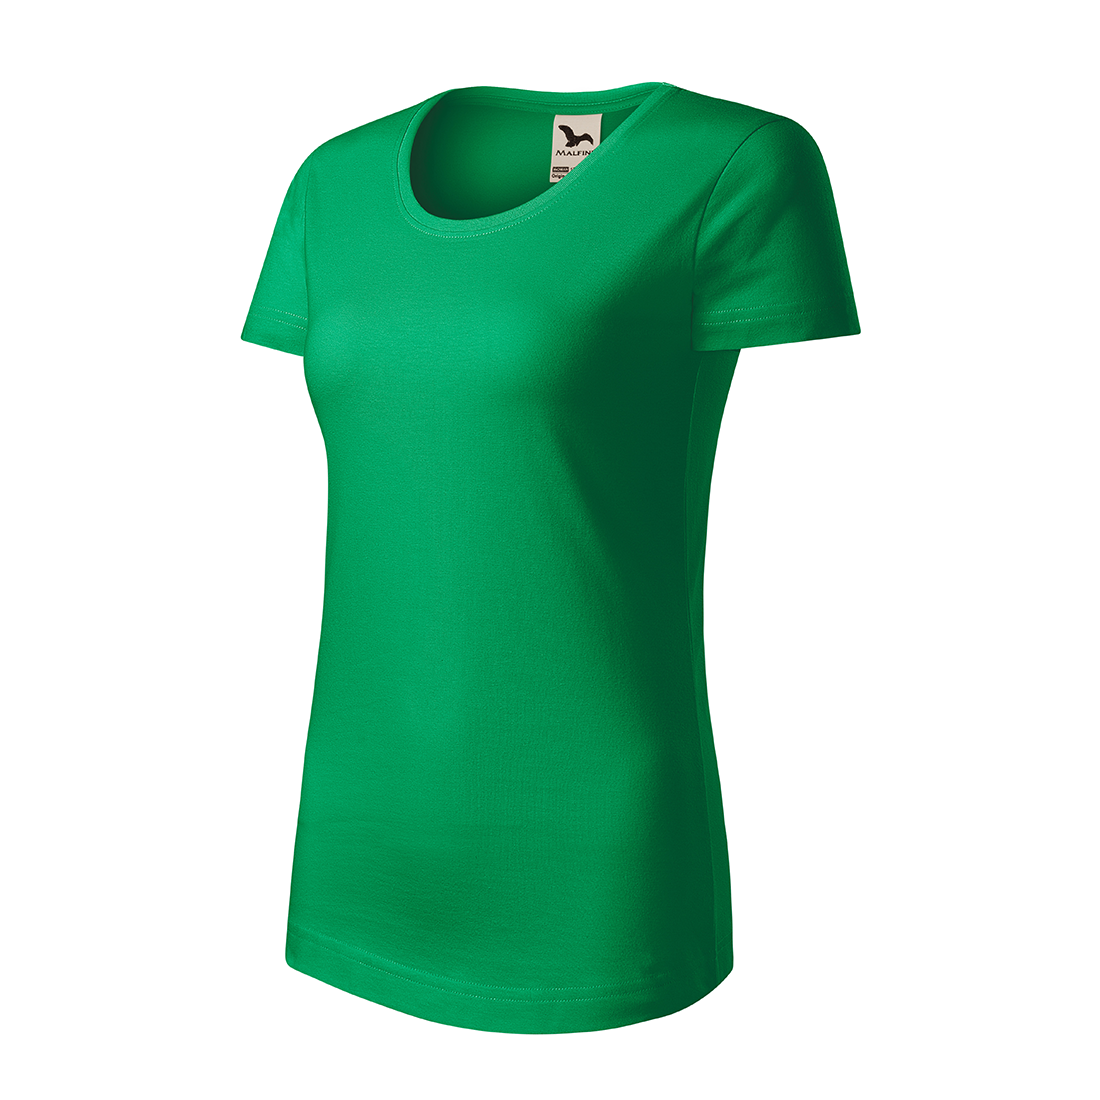 T-shirt femme coton bio - Les vêtements de protection